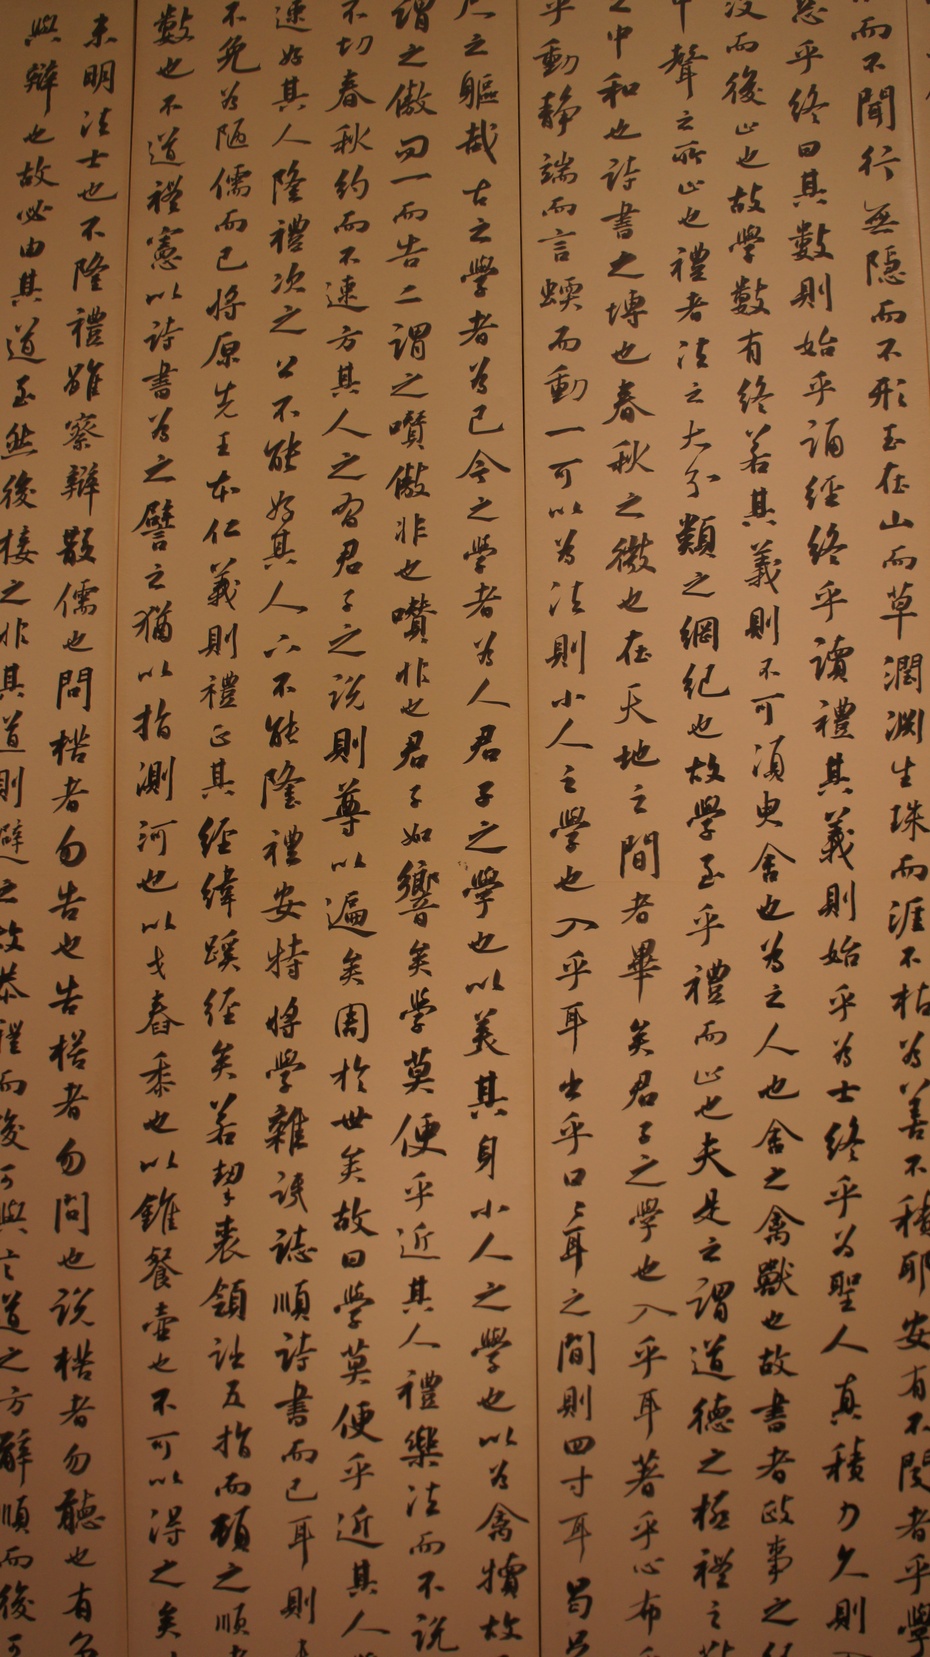 走进中国美术馆欣赏名家书法 - 余昌国 - 我的博客